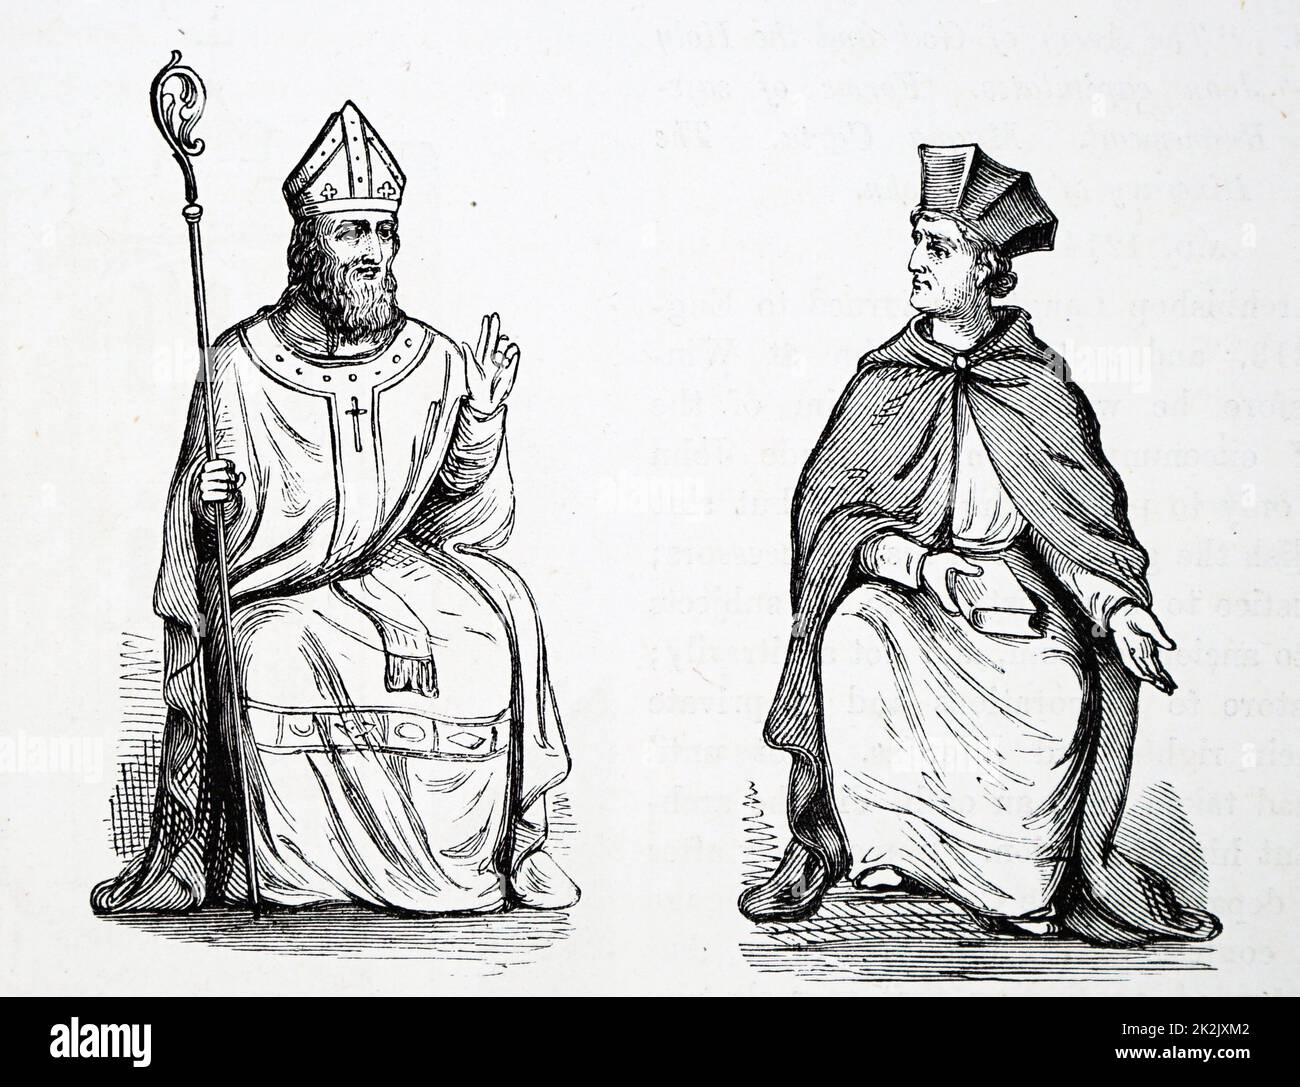 Gravure d'une cité médiévale l'archevêque et cardinal. En date du 14e siècle Banque D'Images